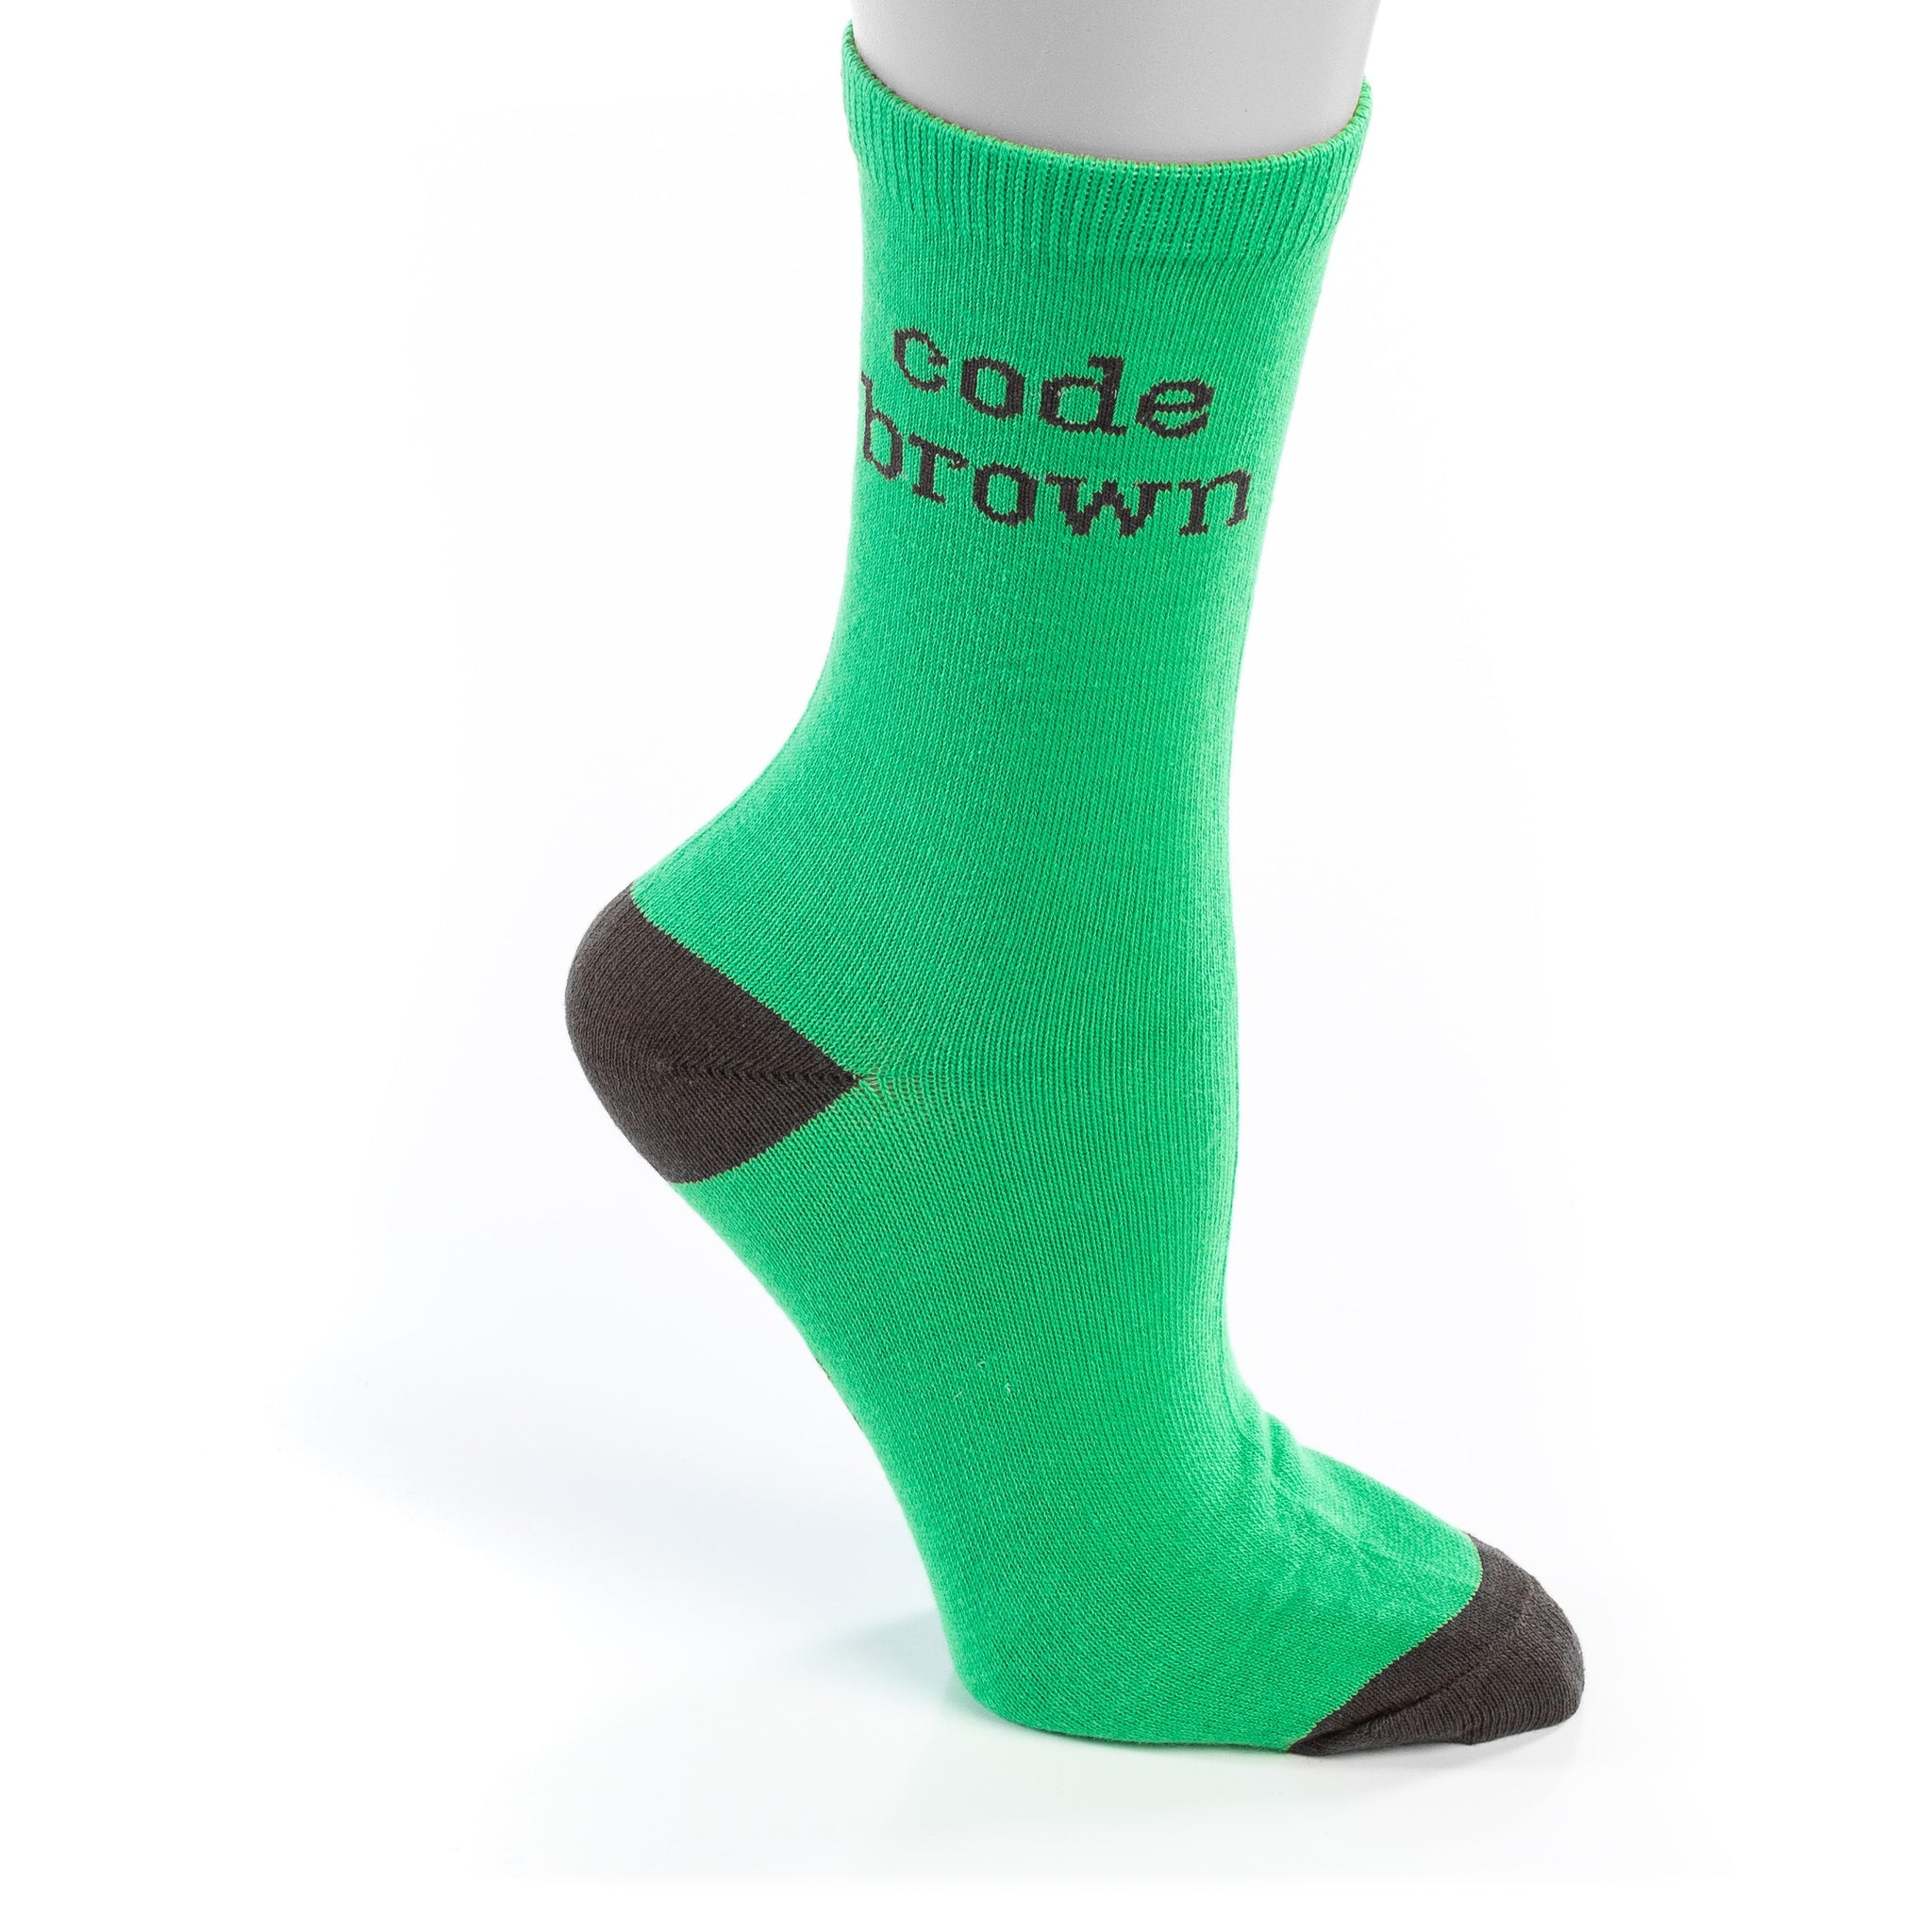 Code Brown Socks